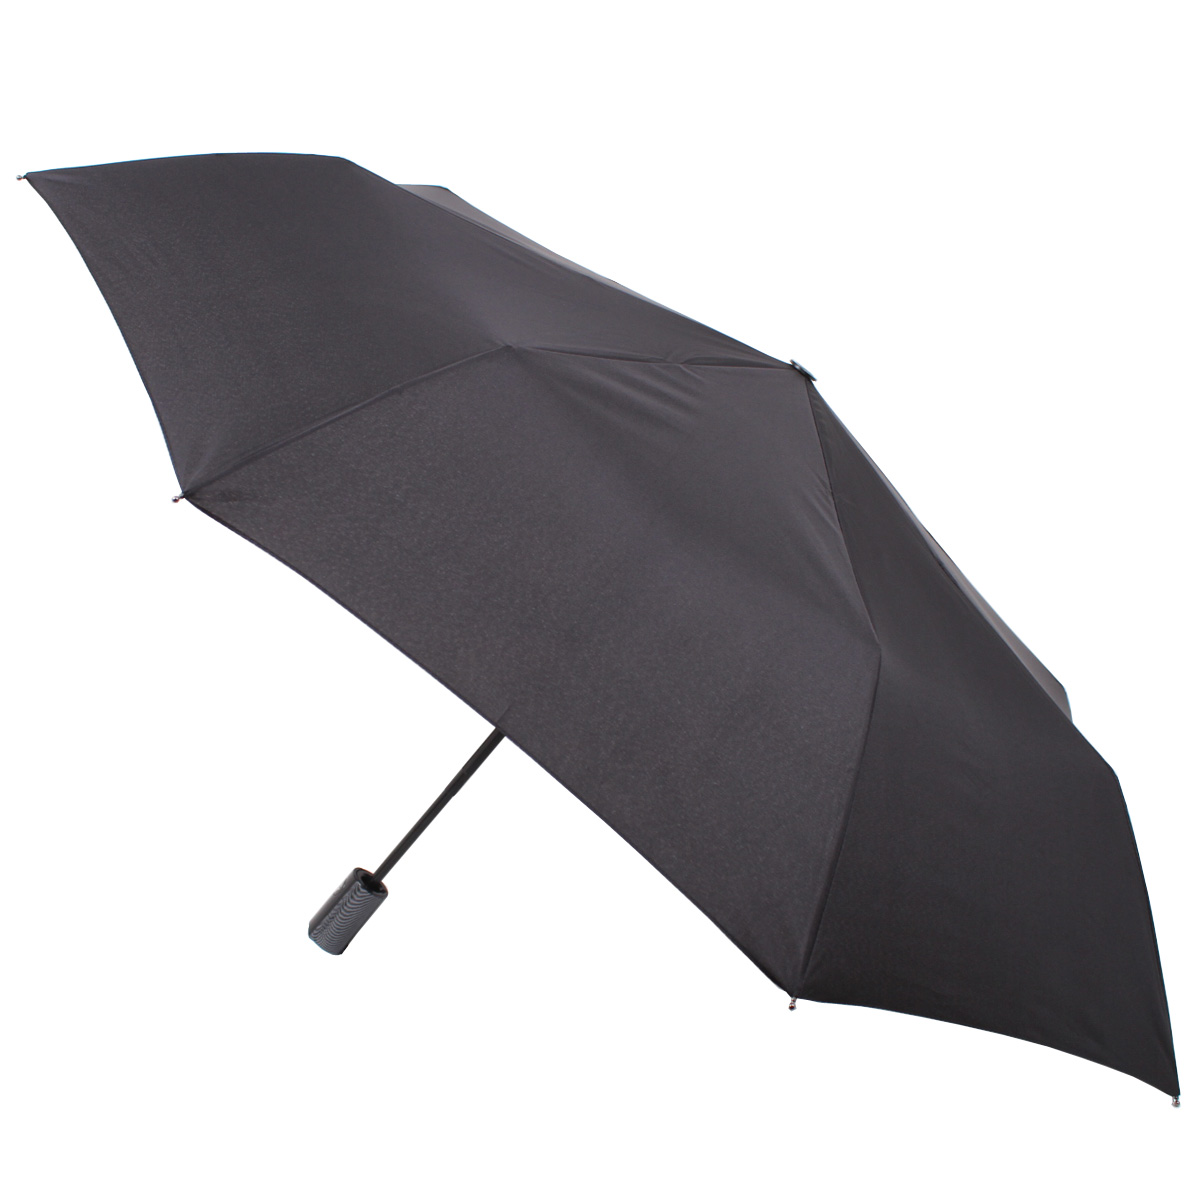 Зонт складной мужской автоматический Flioraj 31001 FJ черный